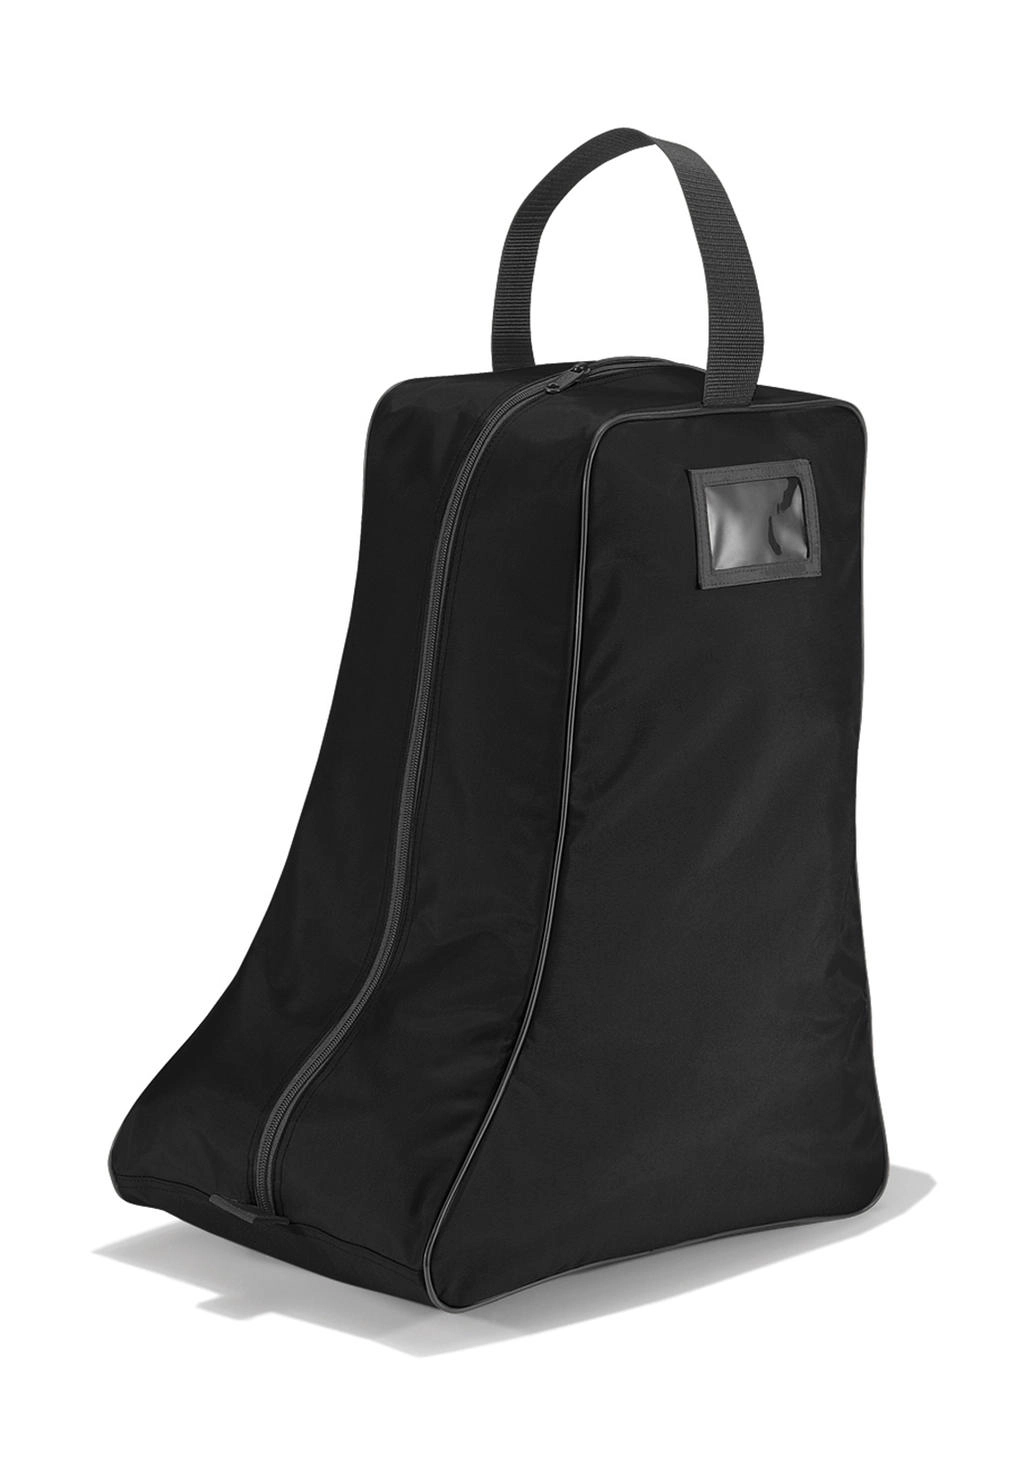 Boots Bag zum Besticken und Bedrucken in der Farbe Black/Graphite Grey mit Ihren Logo, Schriftzug oder Motiv.